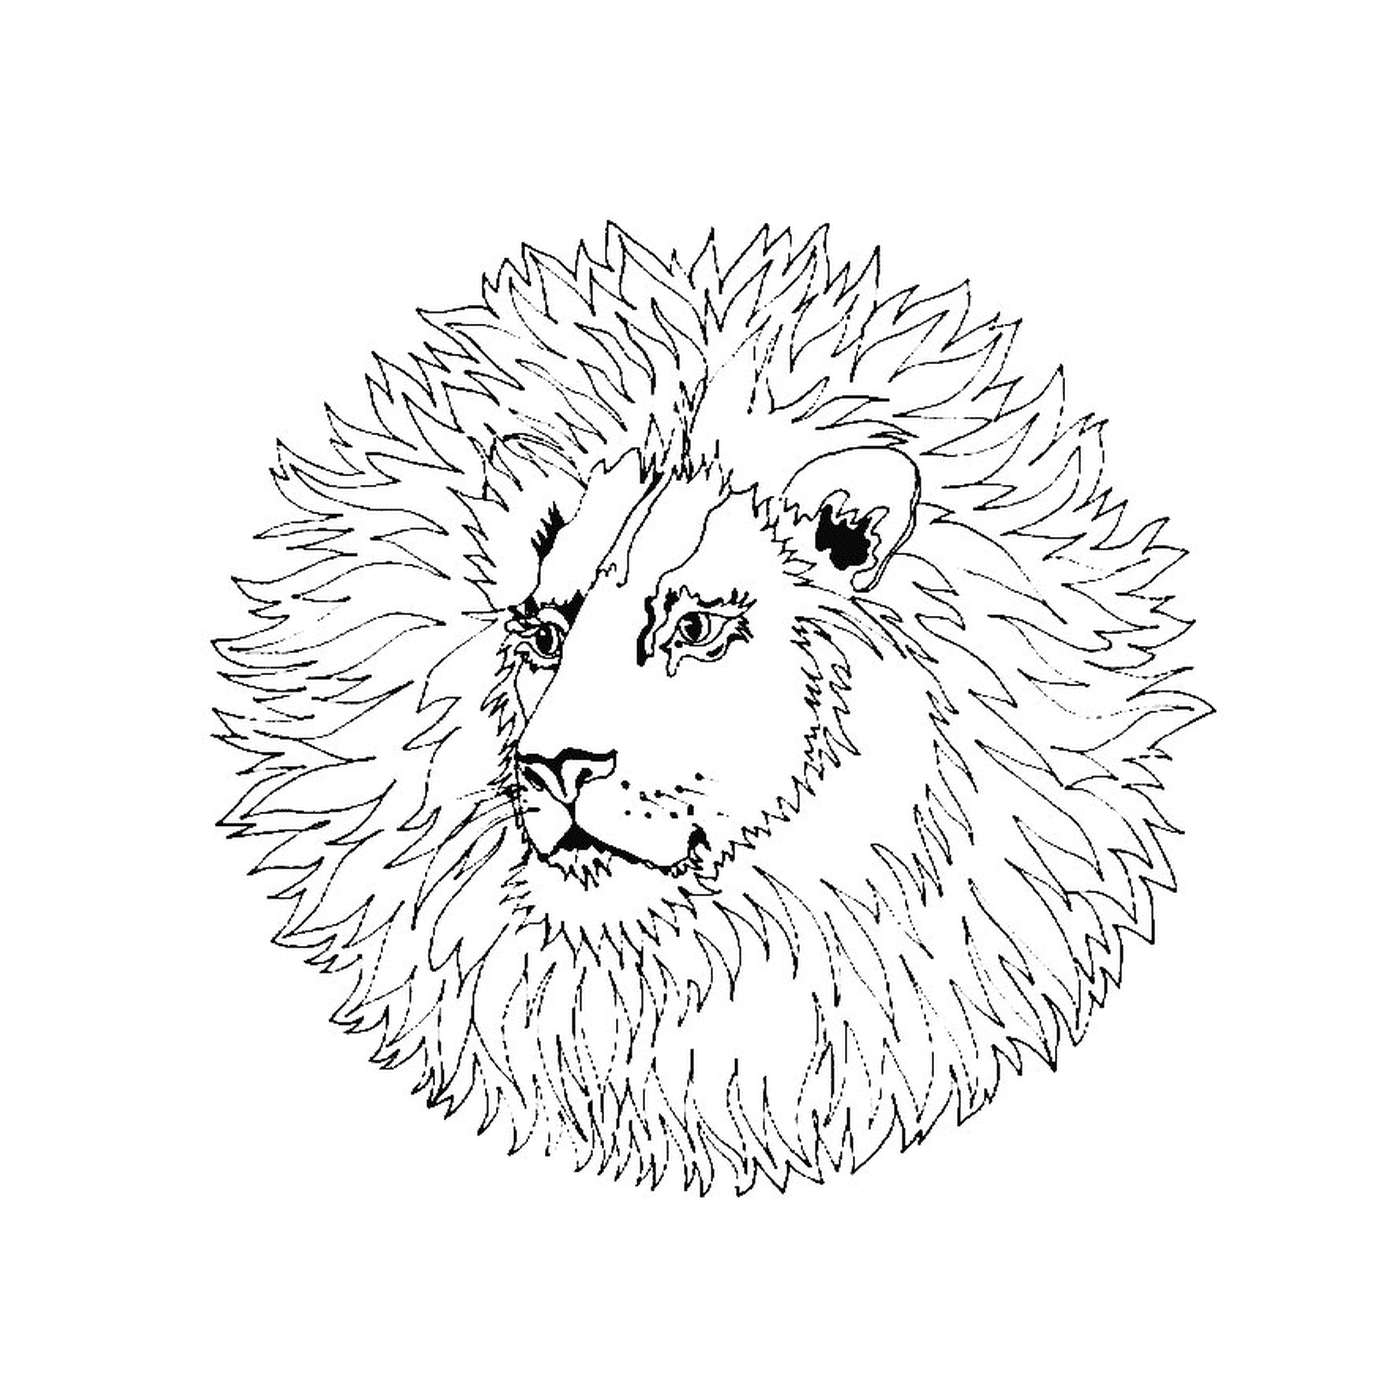  曼达拉狮子会 